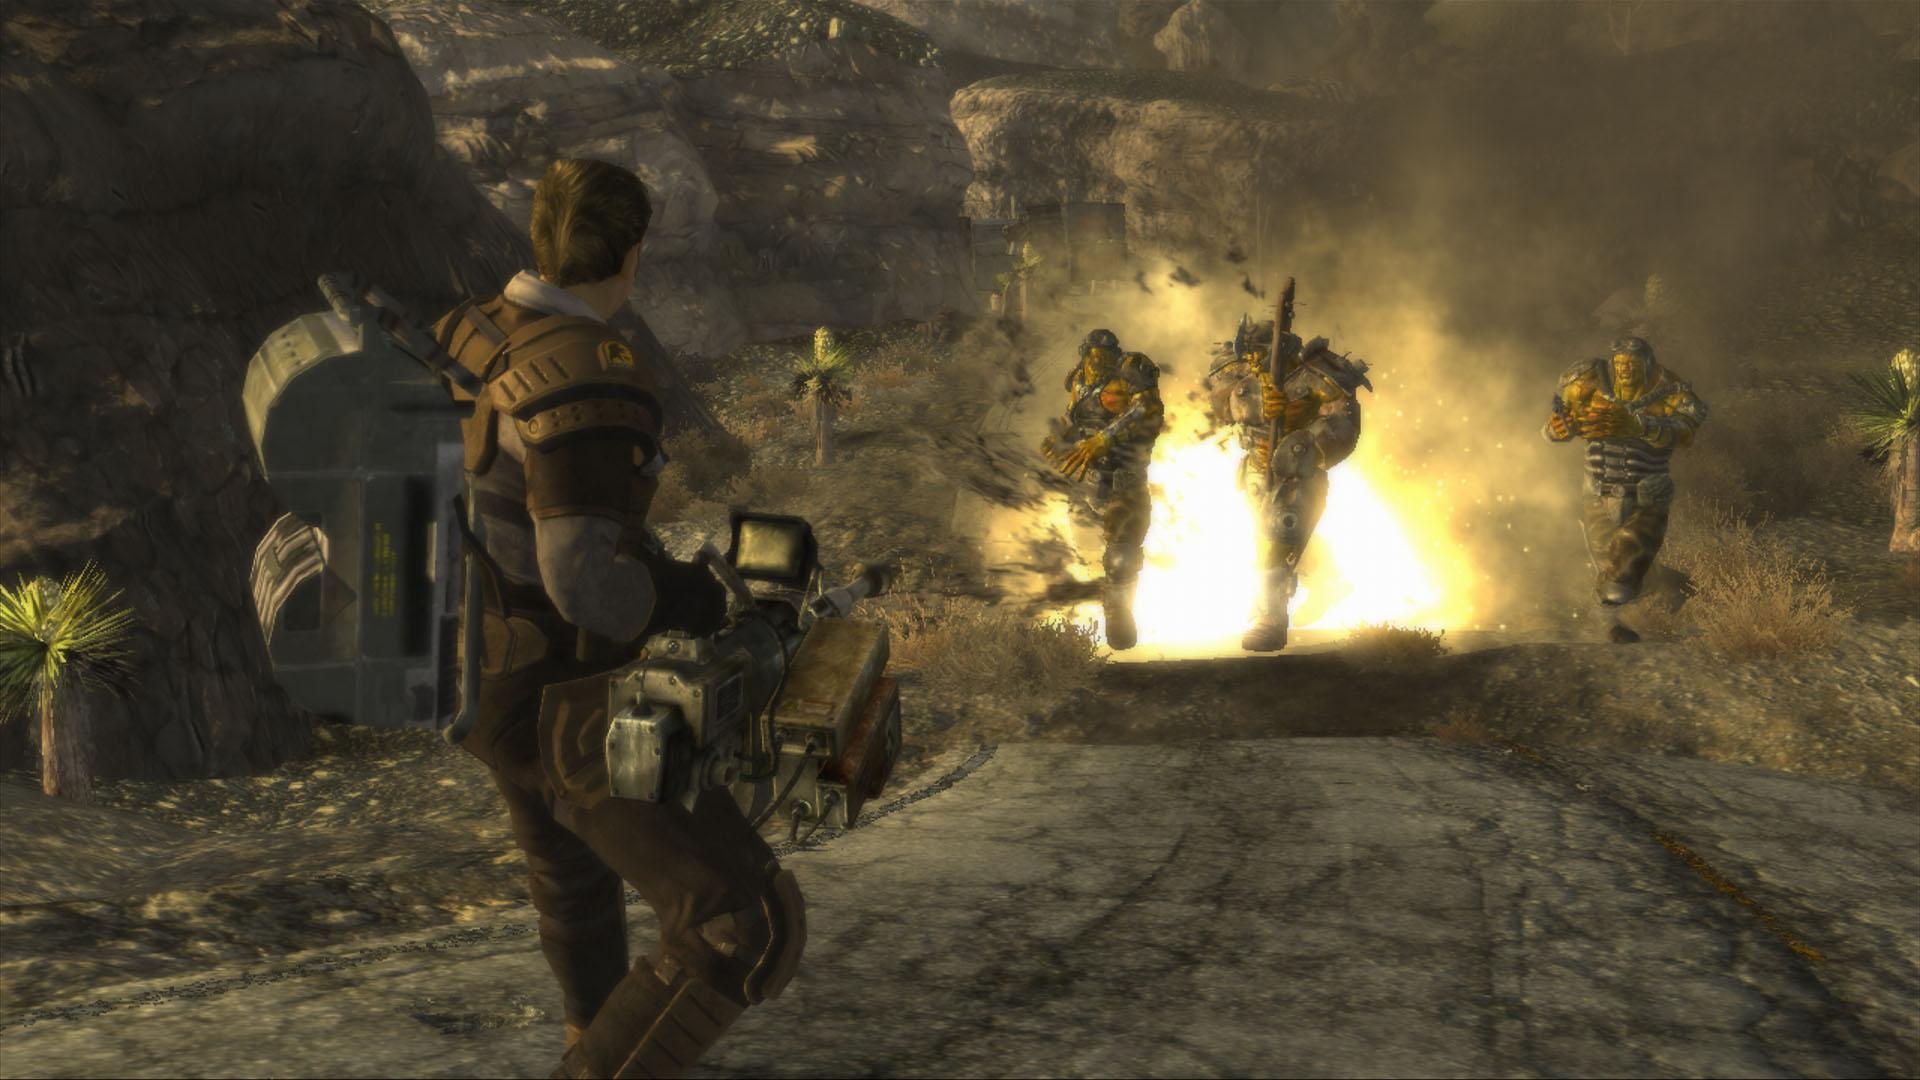 New Vegas, de beste moderne Fallout-game, staat bovenaan de gratis pc-games van Prime Gaming voor november